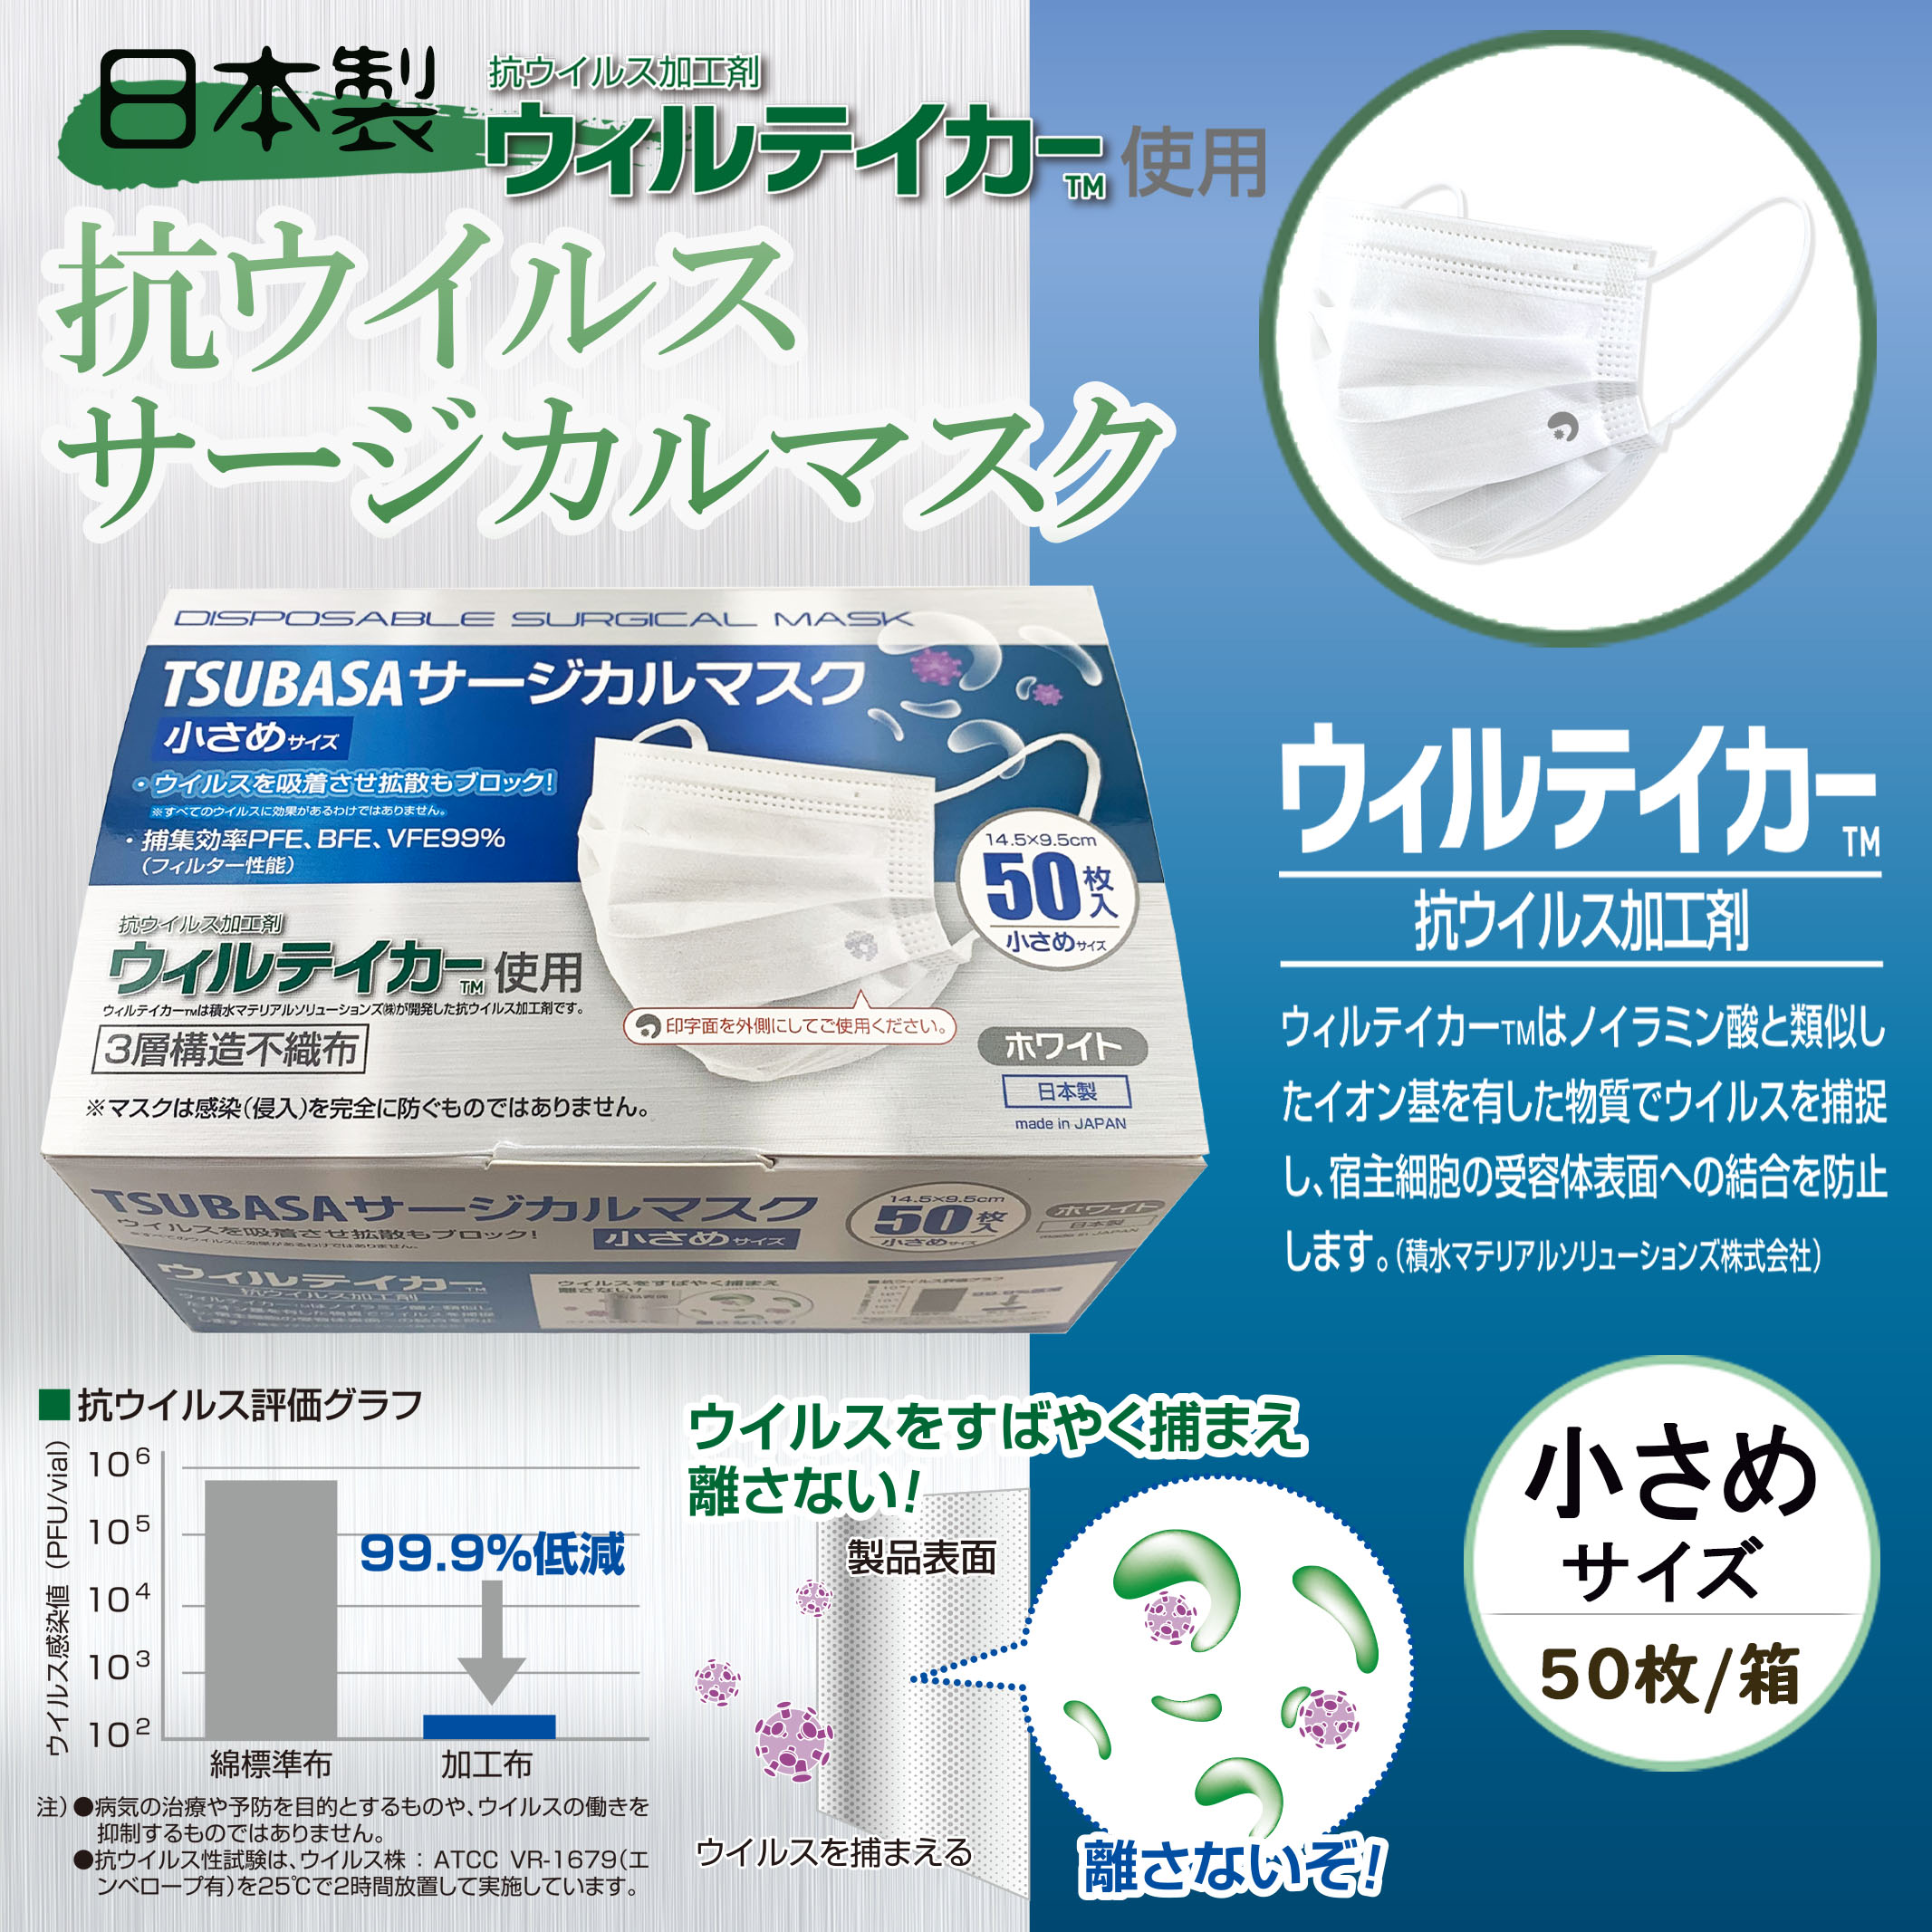 【日本製】TSUBASA サージカルマスク 抗ウイルス加工剤 ウィルテイカー使用 3層構造不織布マスク ホワイト 1BOX-50枚入り 小さめサイズ